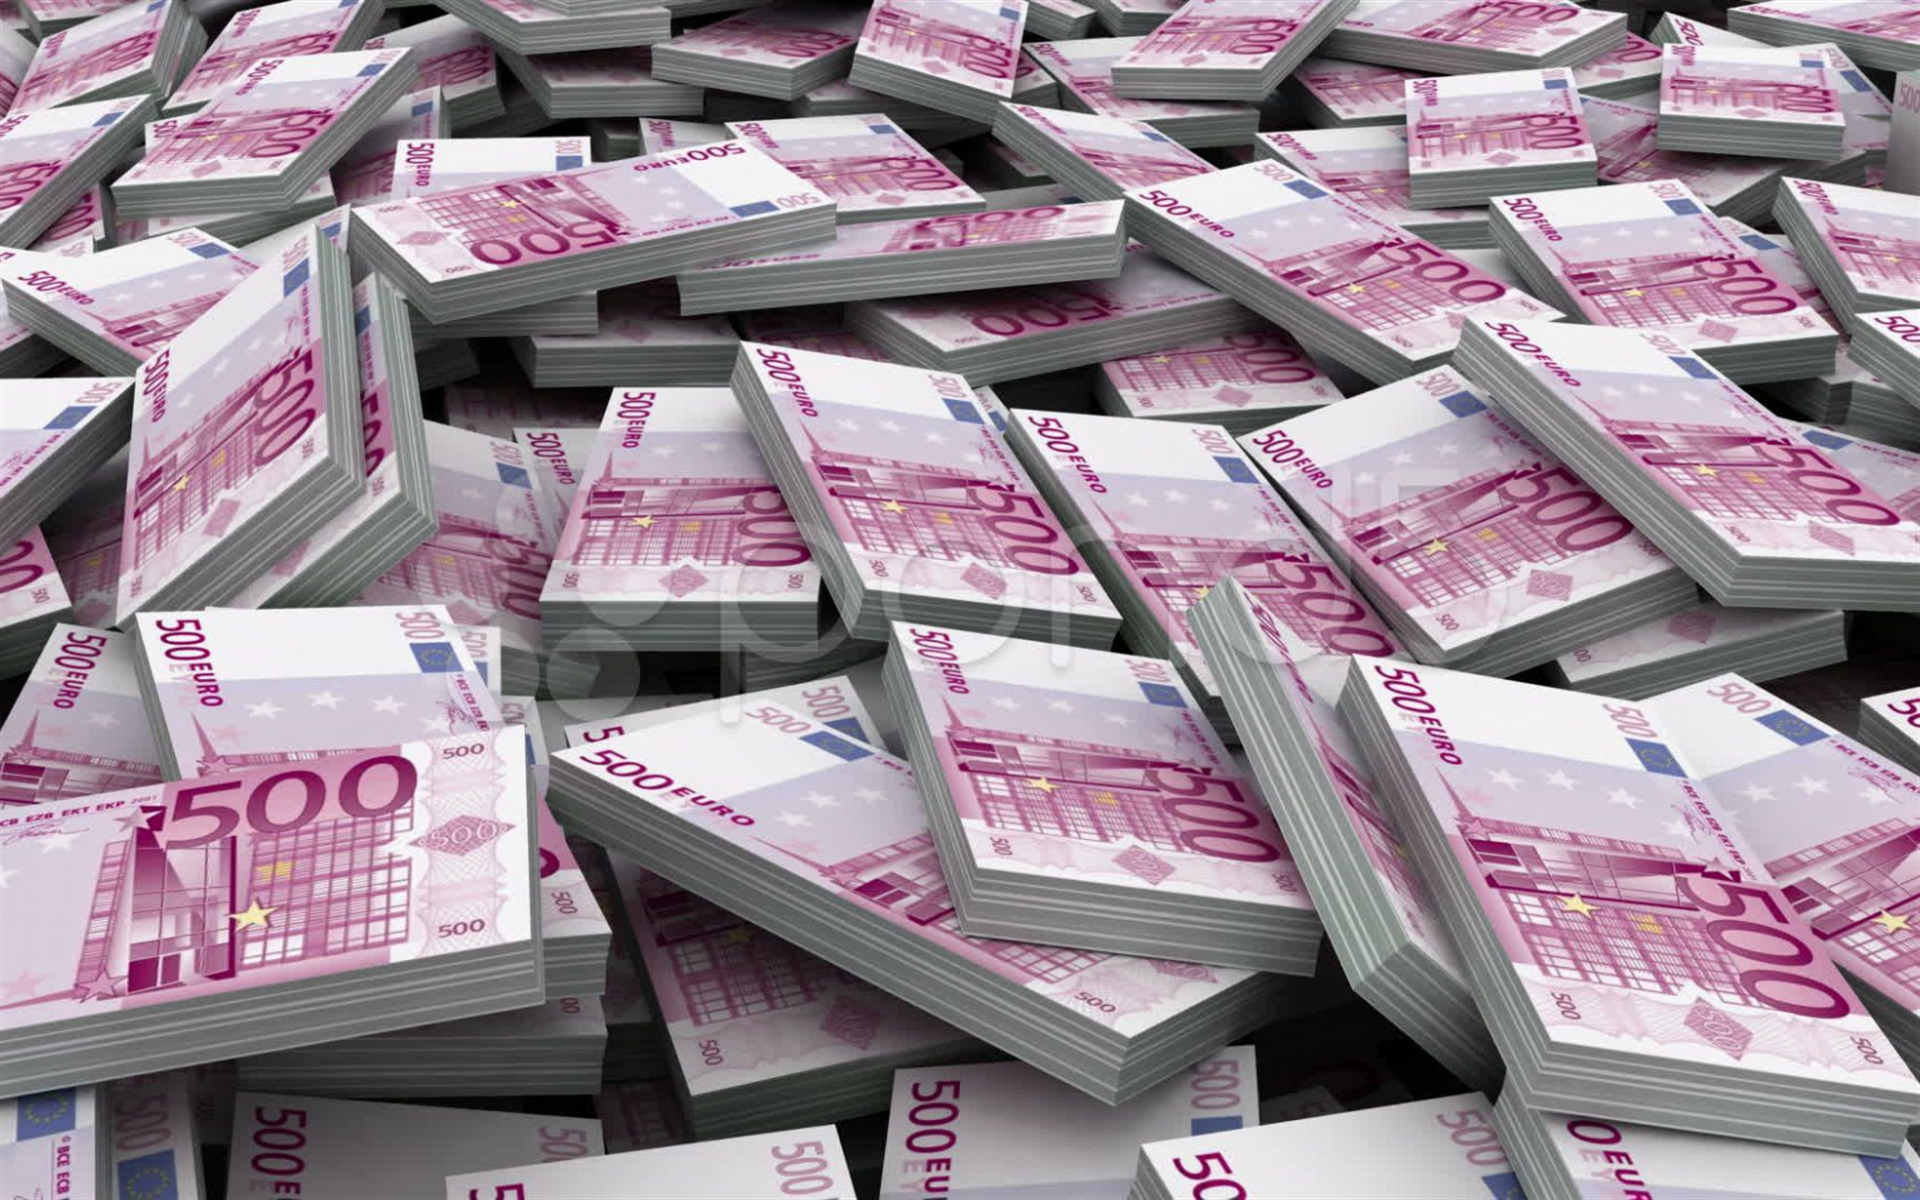 3d Packs Of Money, 3d Mountain Of Money, 500 Euros - HD Wallpaper 